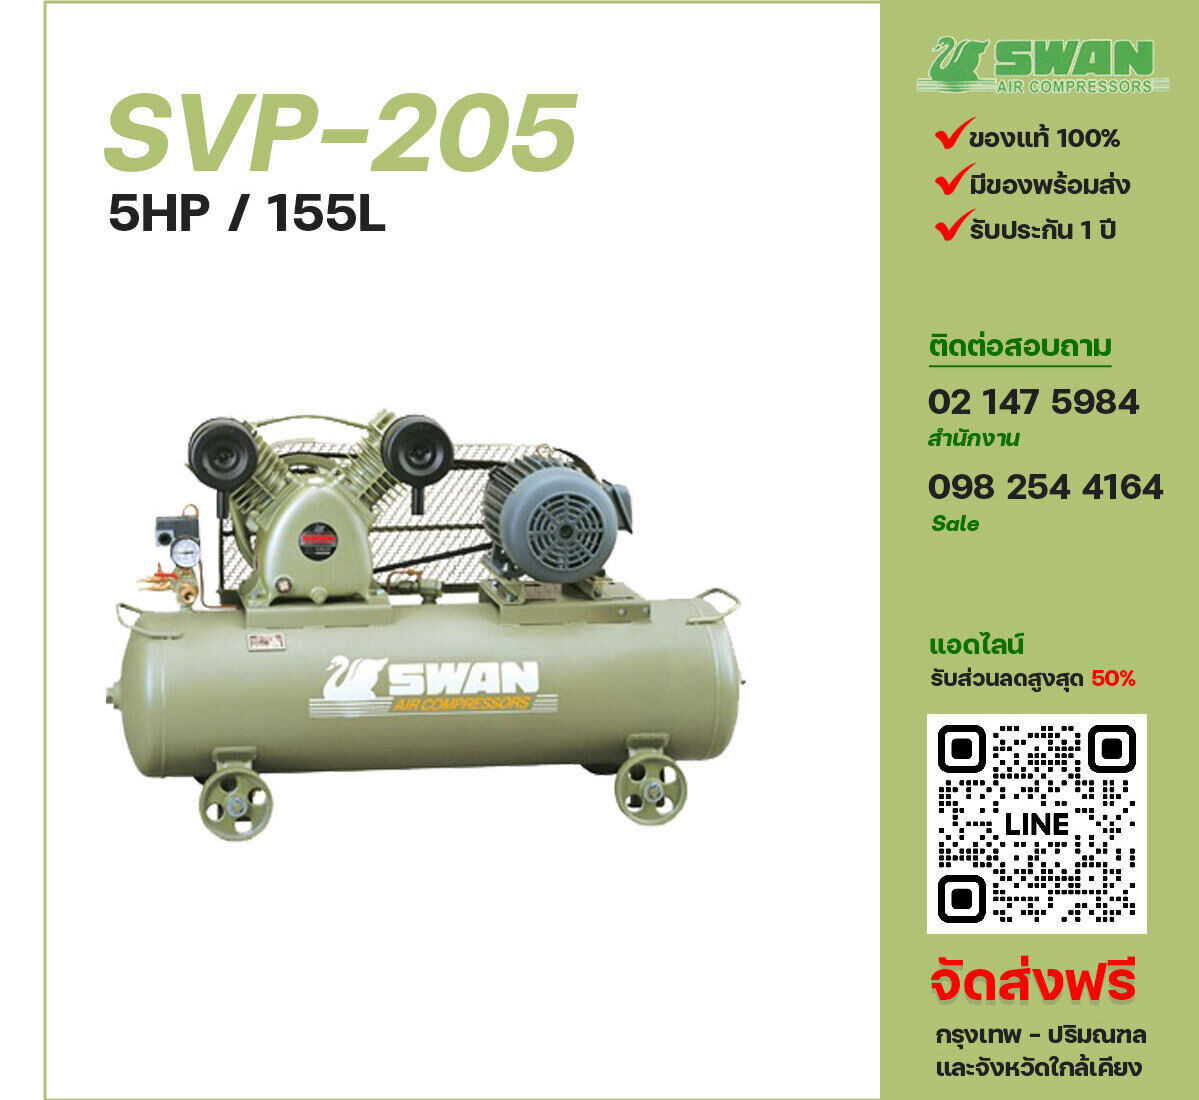 ปั๊มลมสวอน SWAN SVP-205 220V/380V ปั๊มลมลูกสูบ ขนาด 2 สูบ 5 แรงม้า 155 ลิตร SWAN พร้อมมอเตอร์ ไฟ 220V/380V ส่งฟรี กรุงเทพฯ-ปริมณฑล รับประกัน 1 ปี